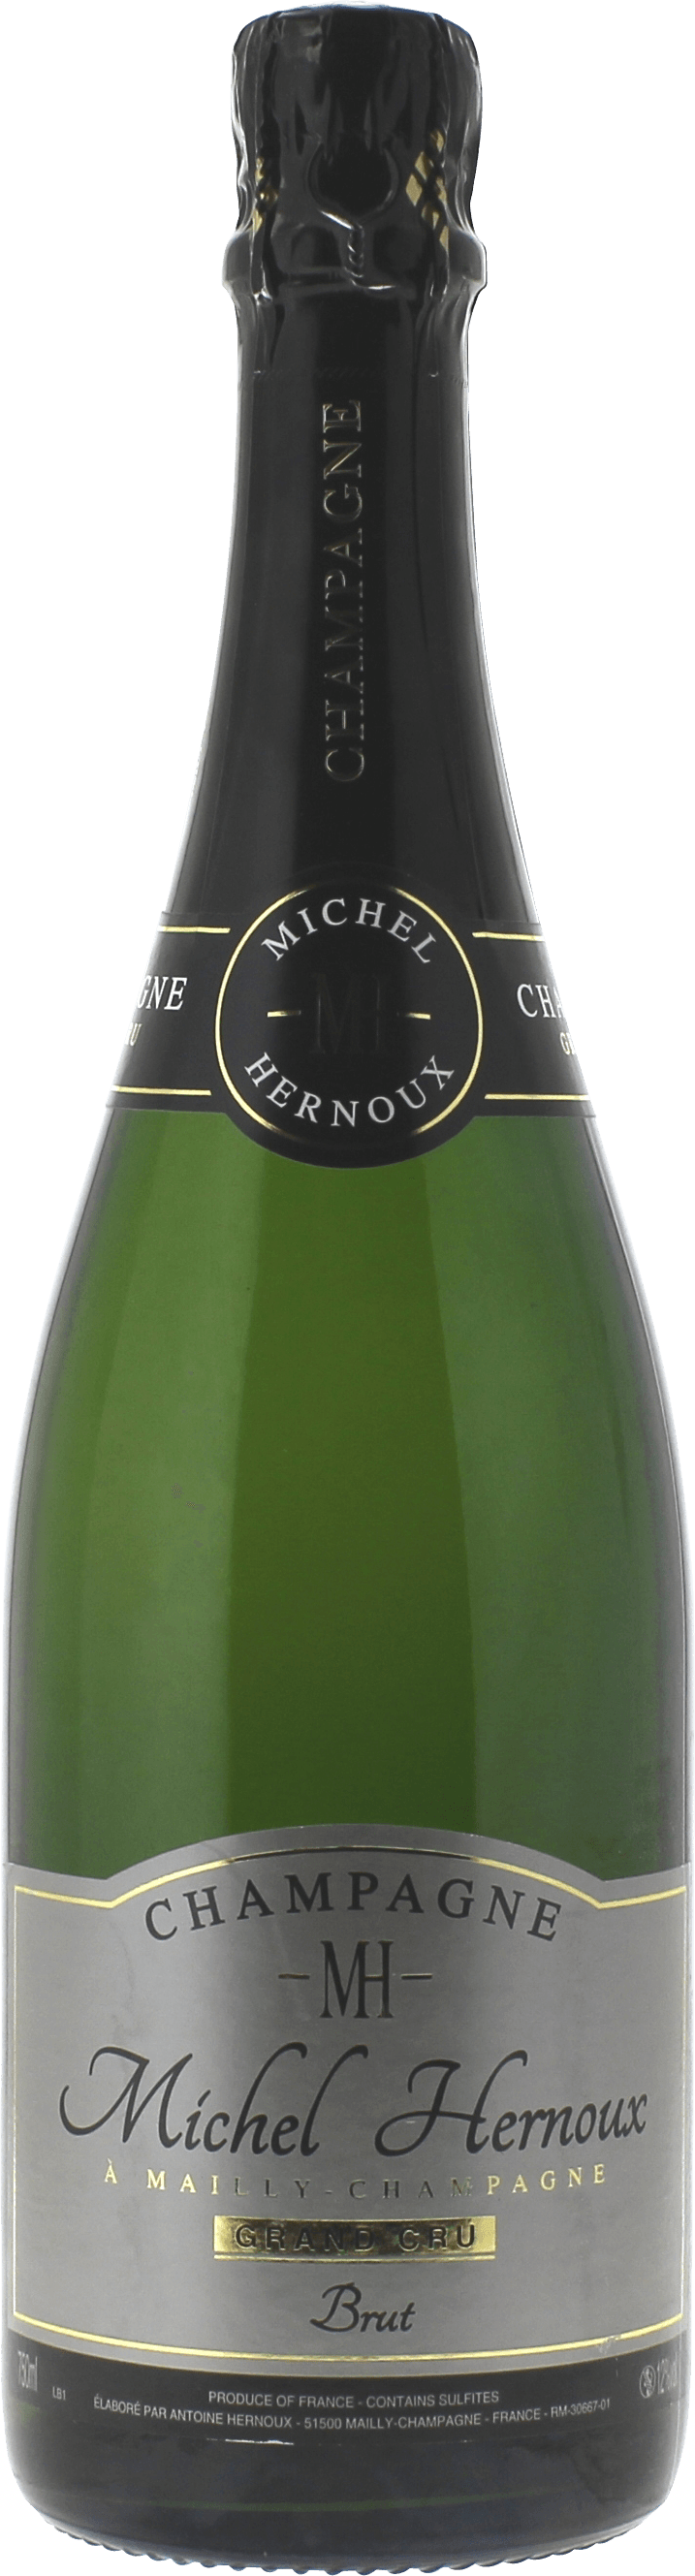 Michel hernoux  Michel hernoux, Champagne